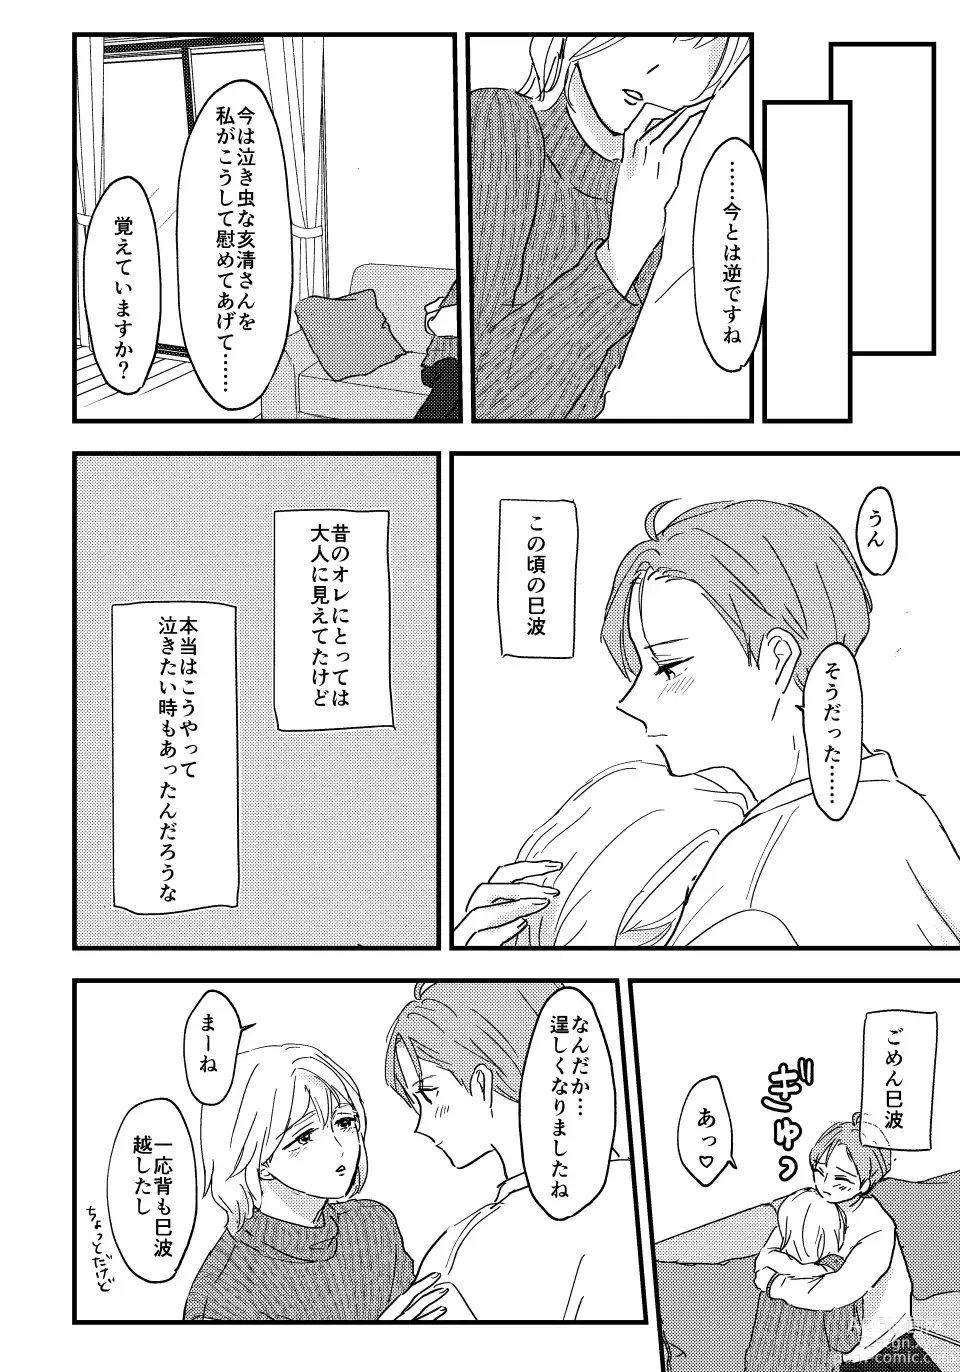 Page 9 of doujinshi Otona ni Nattara